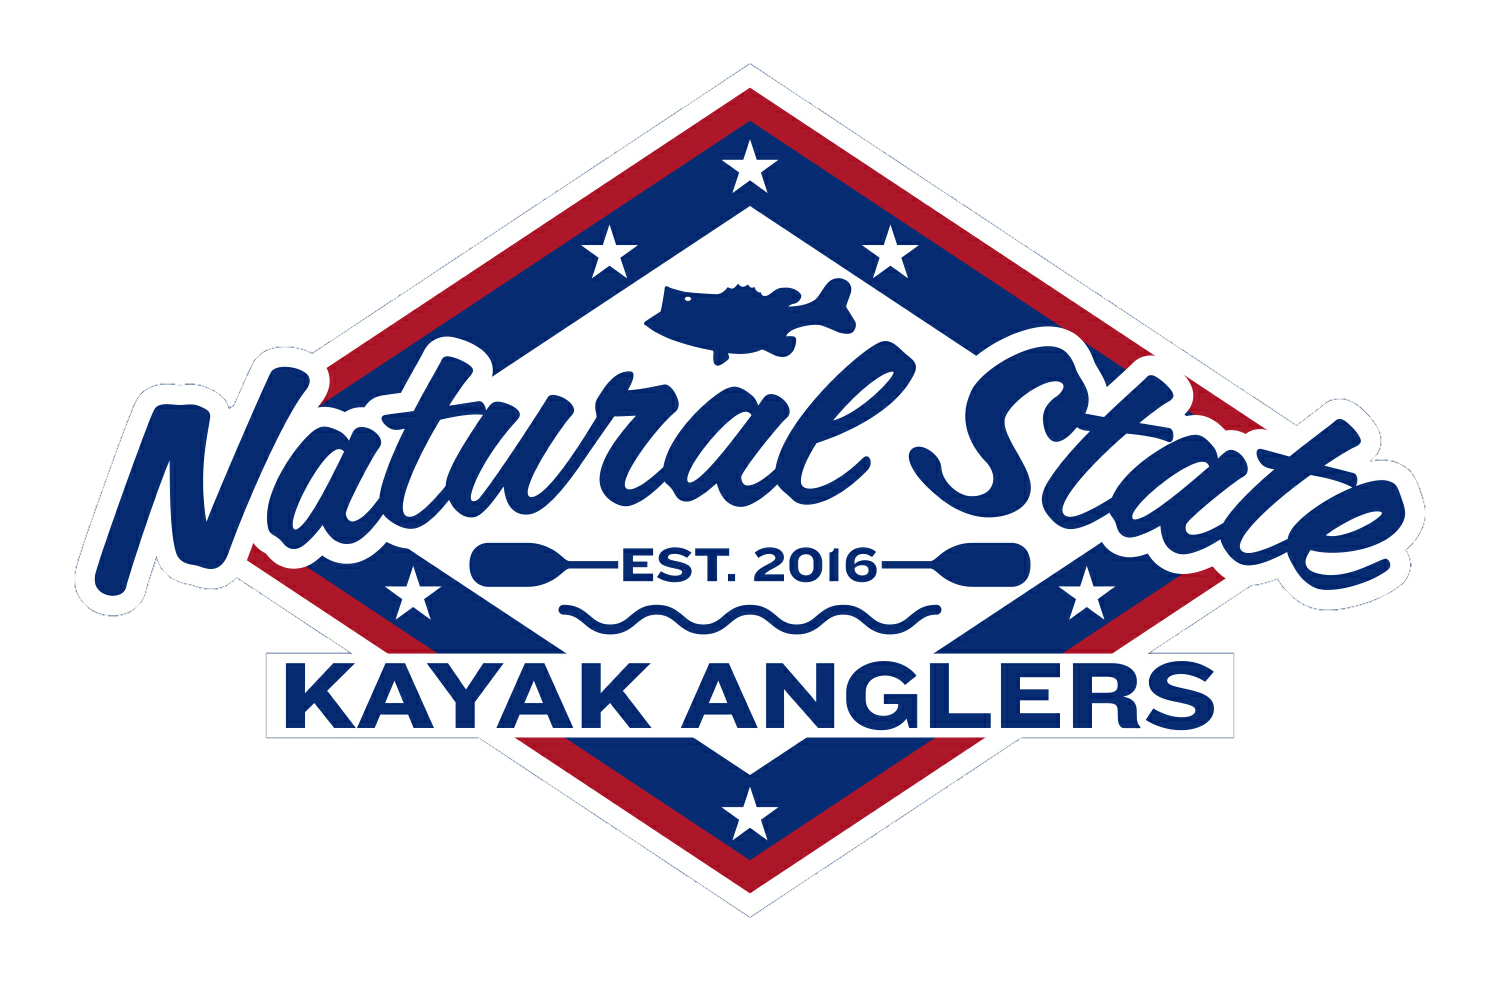 Natural State Kayak Anglers